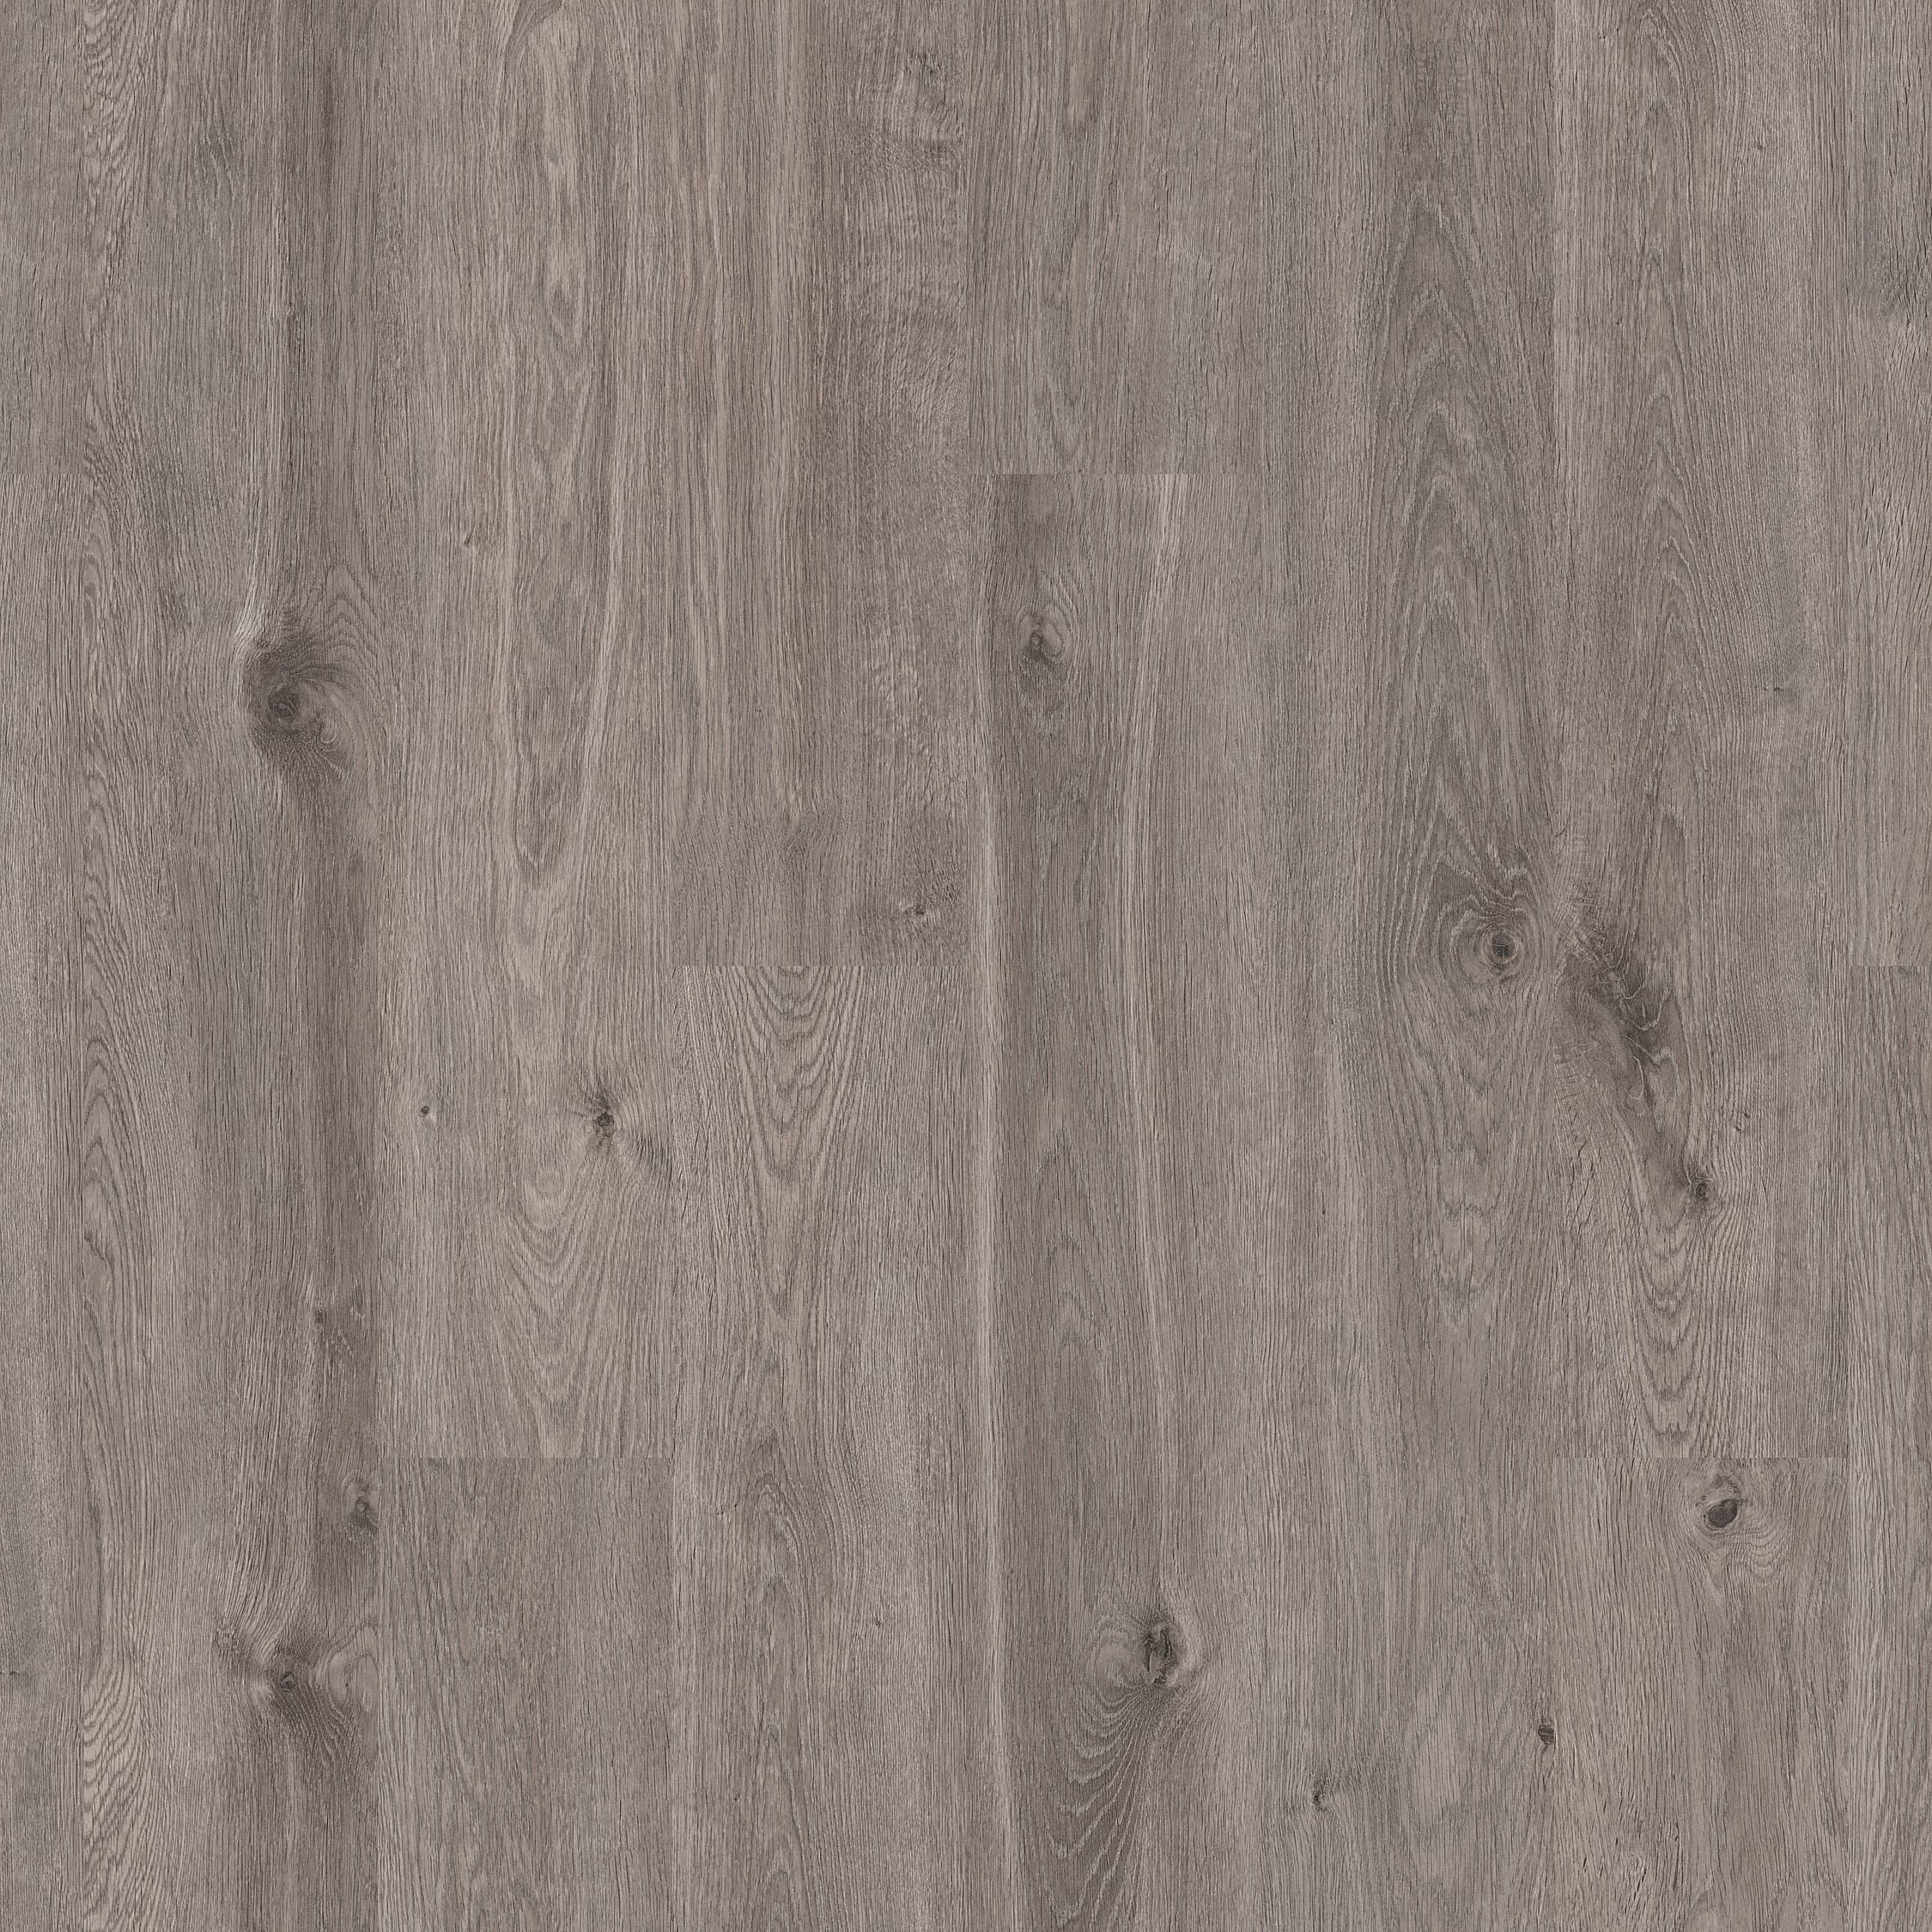 Modsætte sig Bolt melodramatiske Elderwood Medium Grey Oak 12mm Laminate Flooring - 1.48m2 | Wickes.co.uk